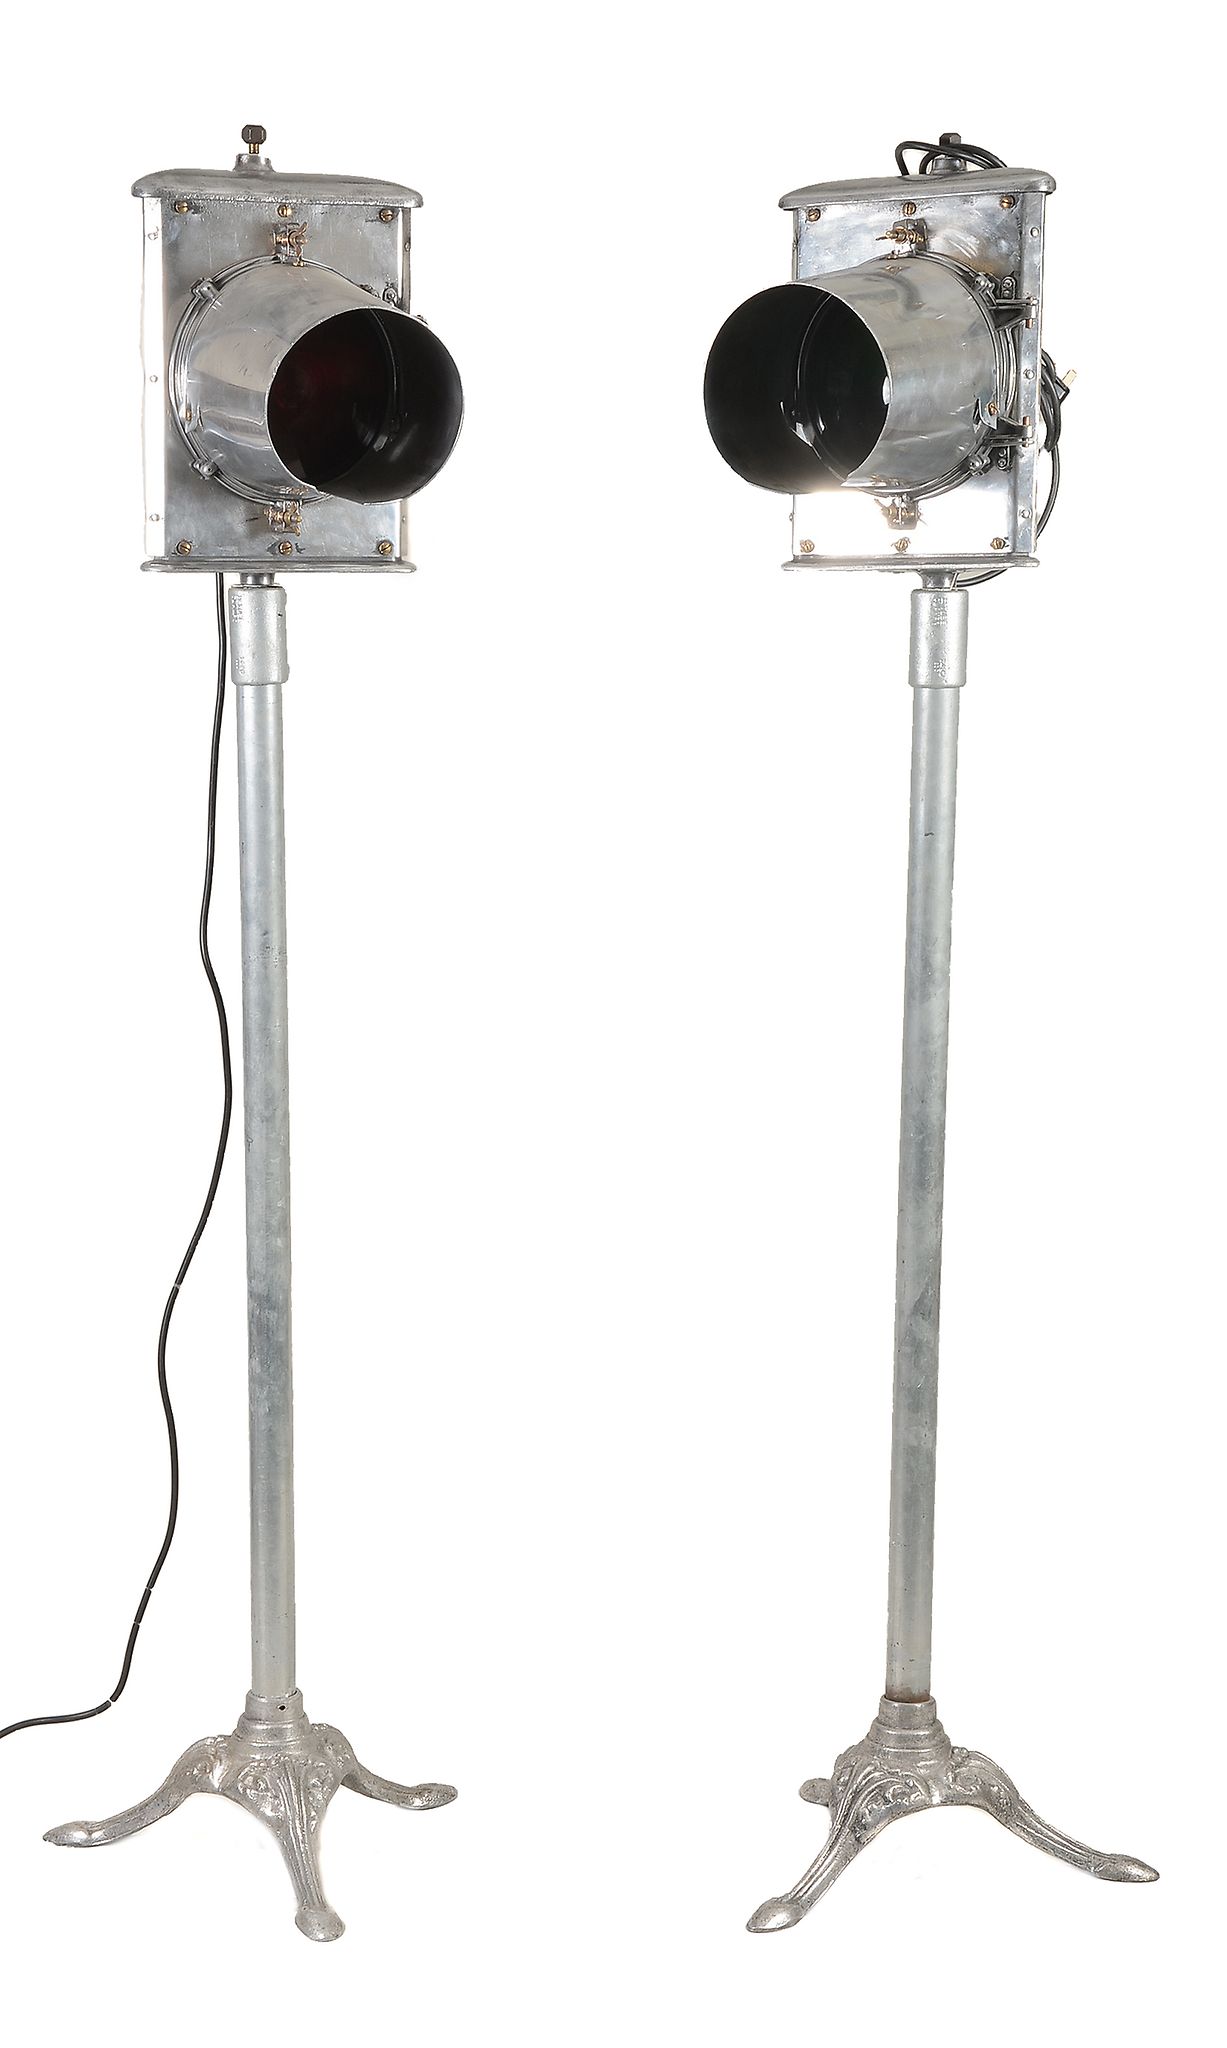 A pair of aluminium railway signal lamps later mounted as standard lamps A pair of aluminium